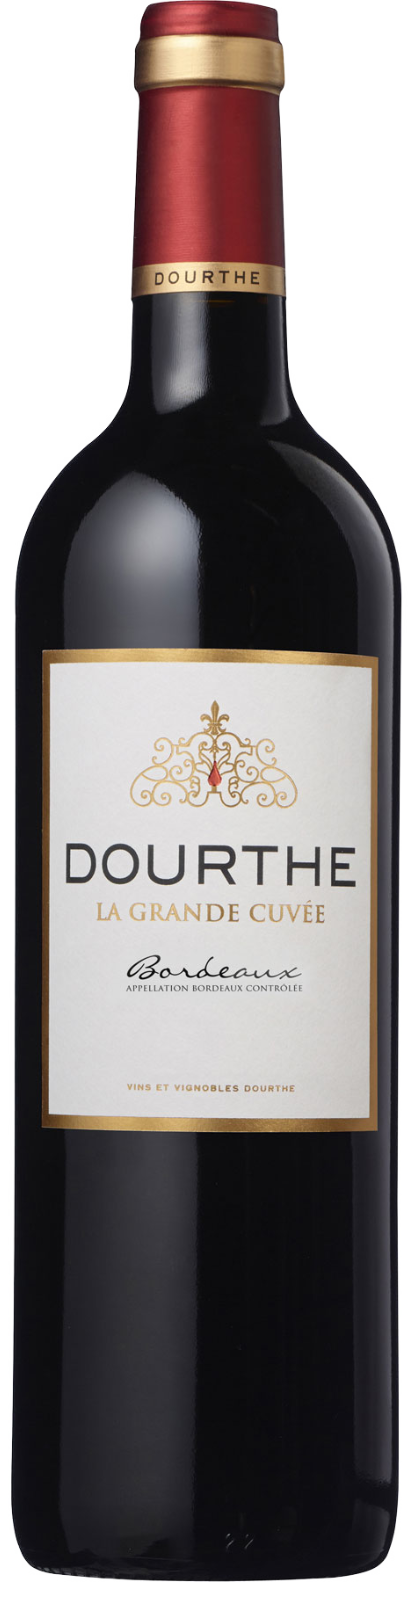 Dourthe La GRANDE CUVEE Bordeaux ROUGE 